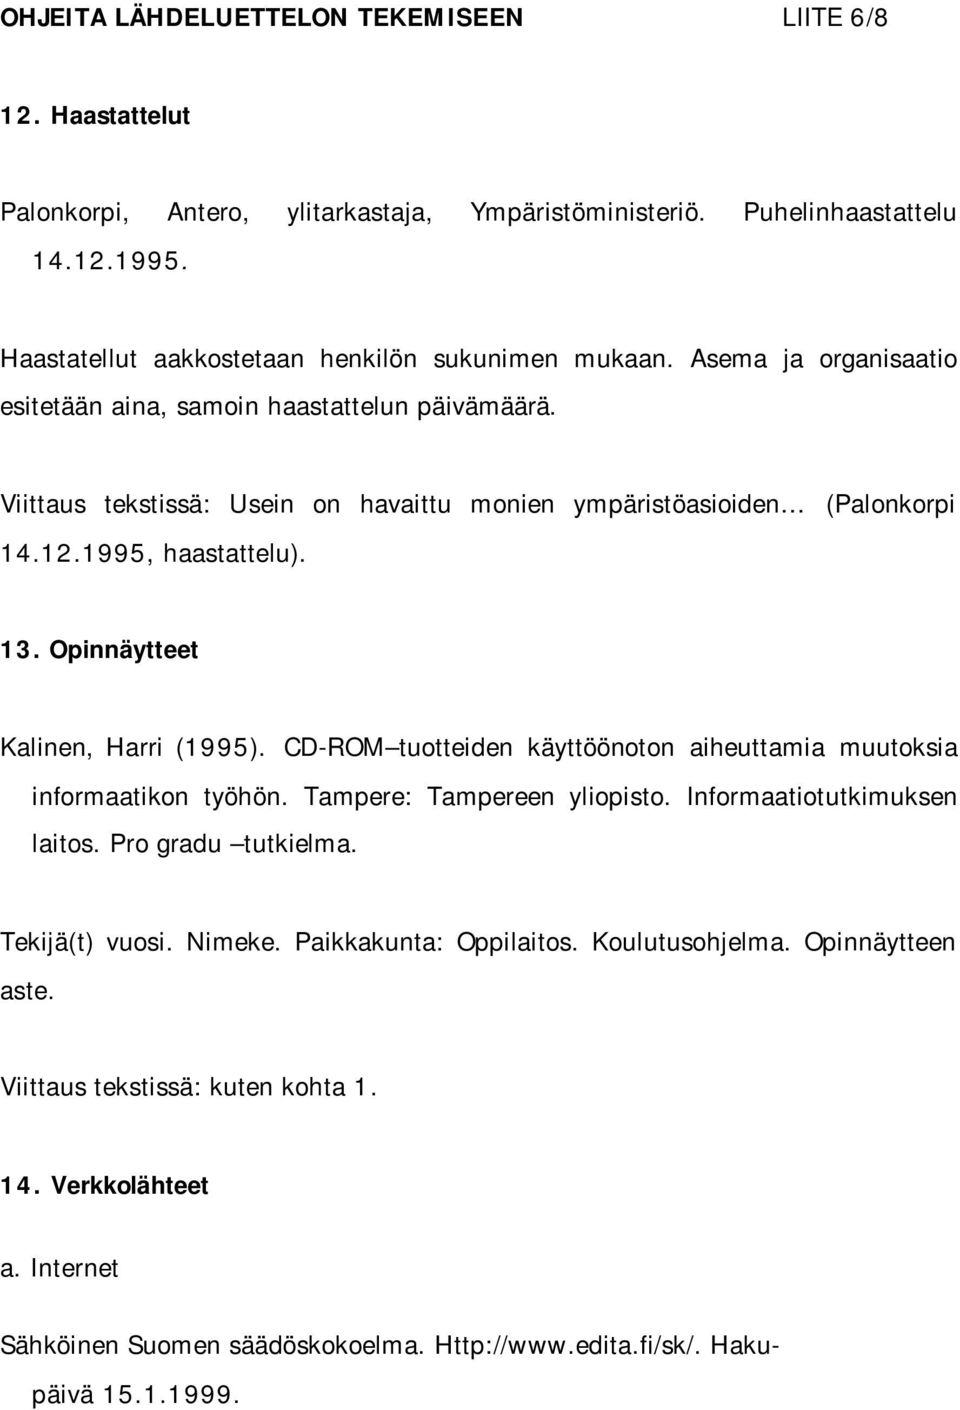 Opinnäytteet Kalinen, Harri (1995). CD-ROM tuotteiden käyttöönoton aiheuttamia muutoksia informaatikon työhön. Tampere: Tampereen yliopisto. Informaatiotutkimuksen laitos. Pro gradu tutkielma.